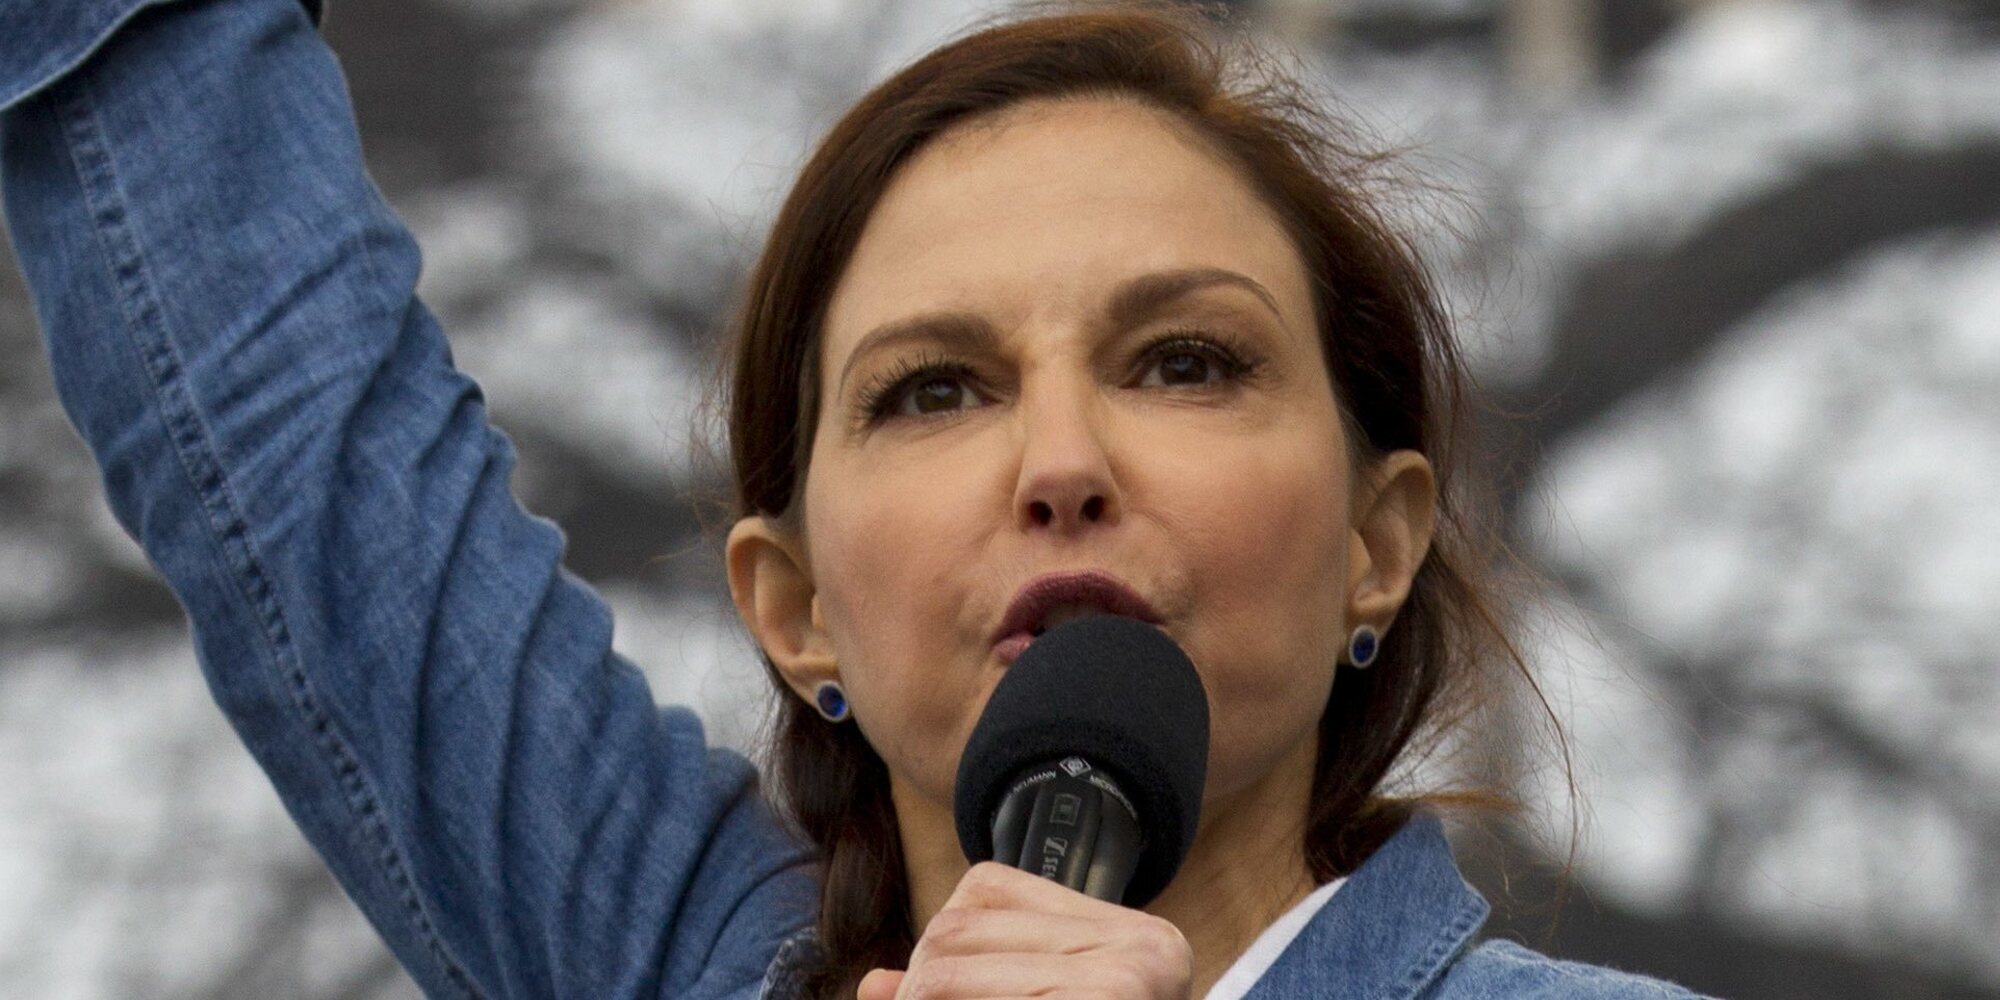 Ashley Judd cuenta cómo fue el reencuentro con su agresor 20 años después de su violación